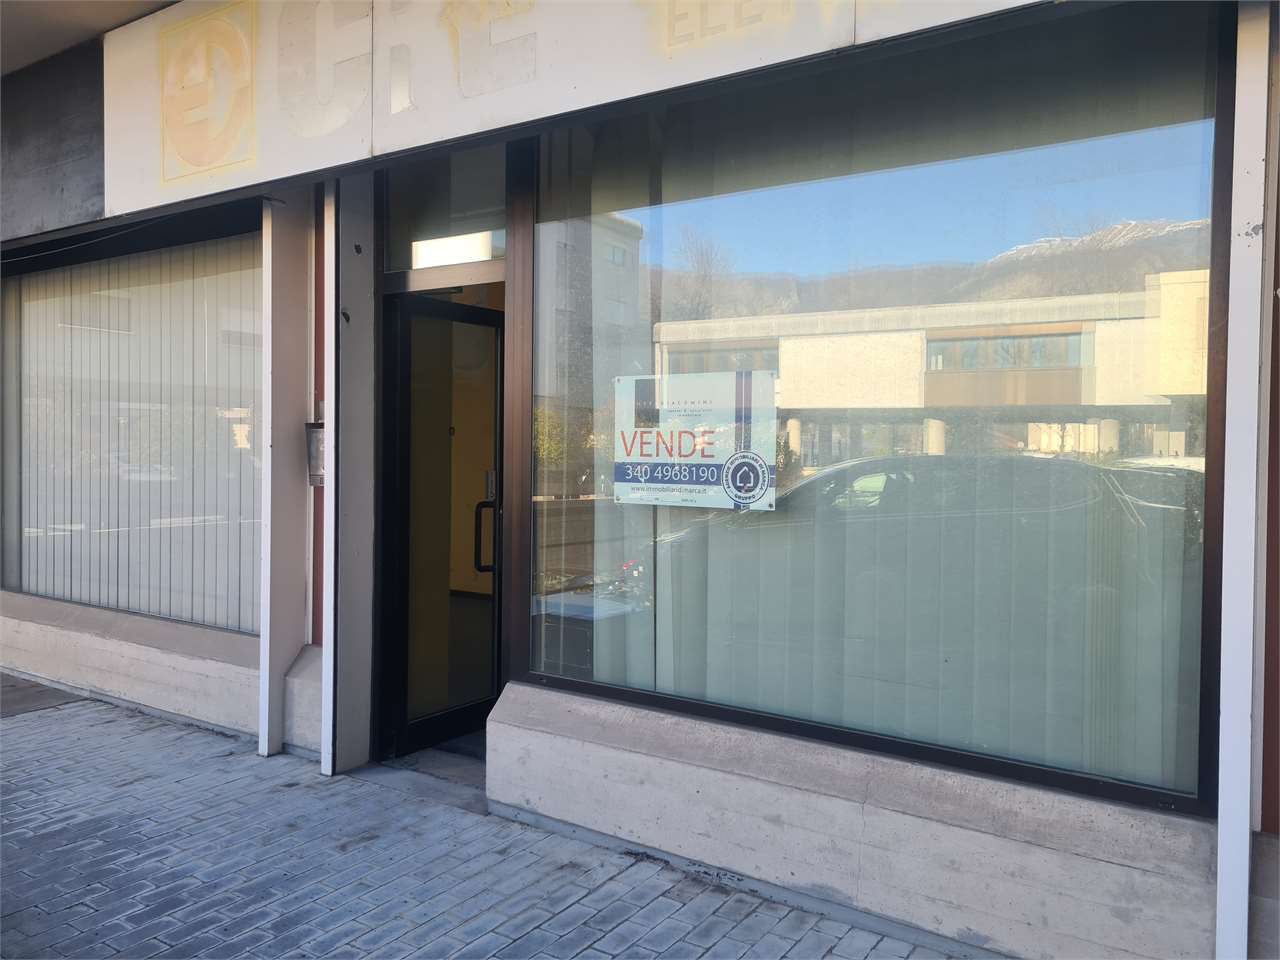 Negozio / Locale in vendita a Vittorio Veneto, 5 locali, zona Località: Centro, prezzo € 115.000 | PortaleAgenzieImmobiliari.it